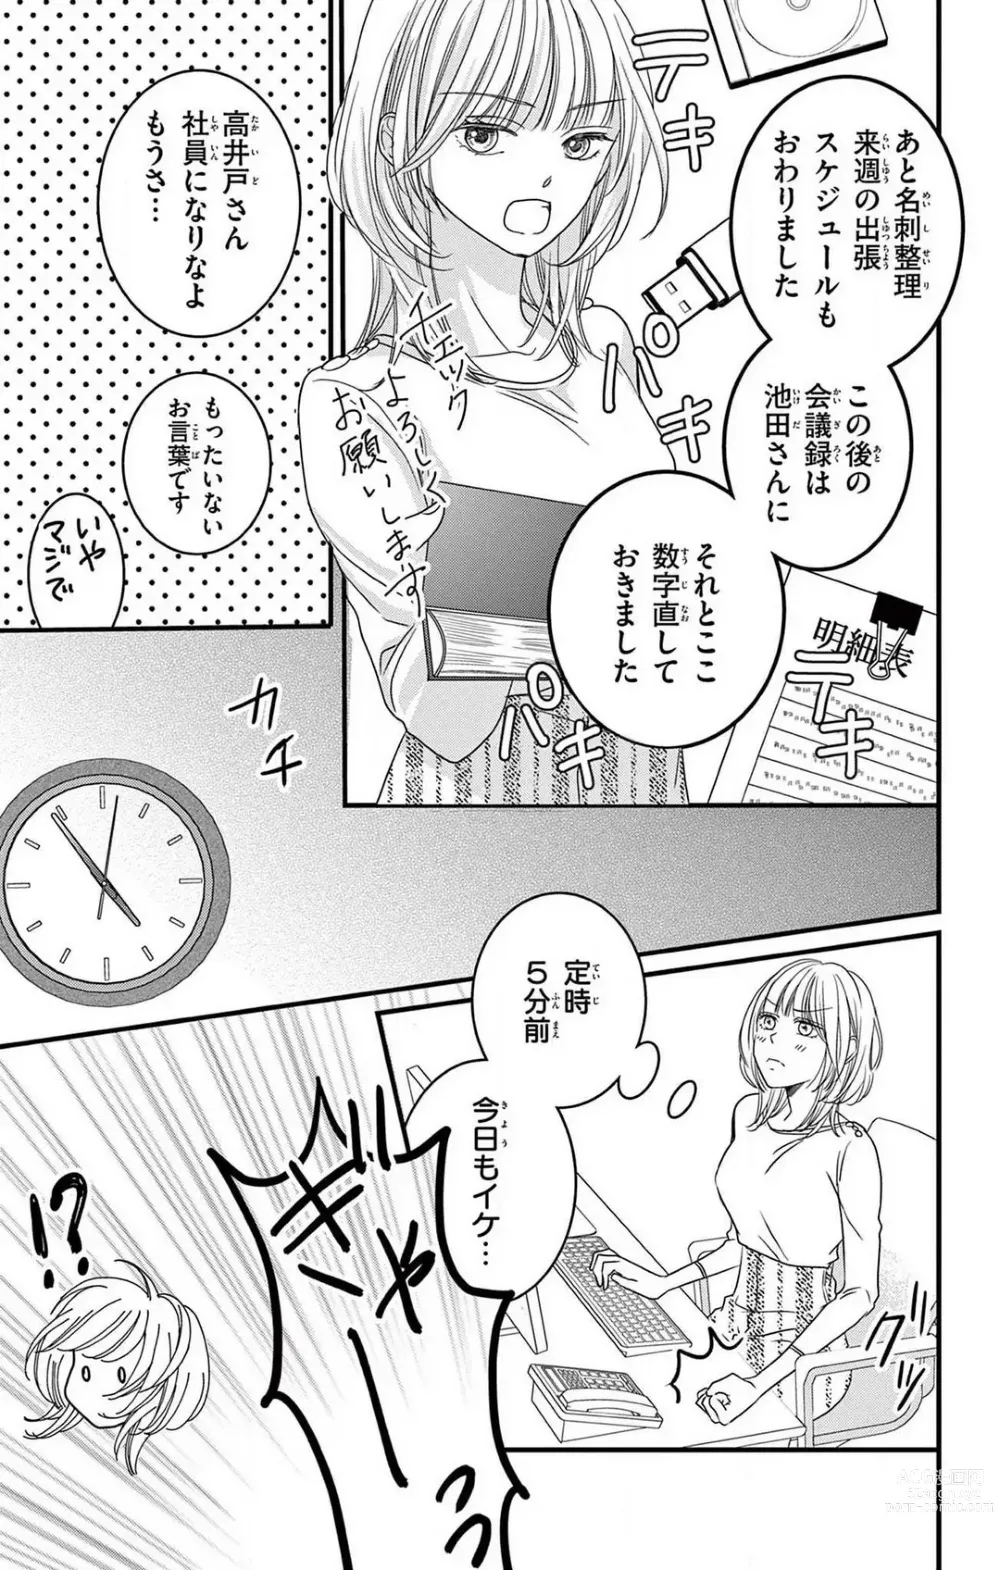 Page 5 of manga Kuzu wa Kuzu Demo Kao ga ii Kuzu 1-7